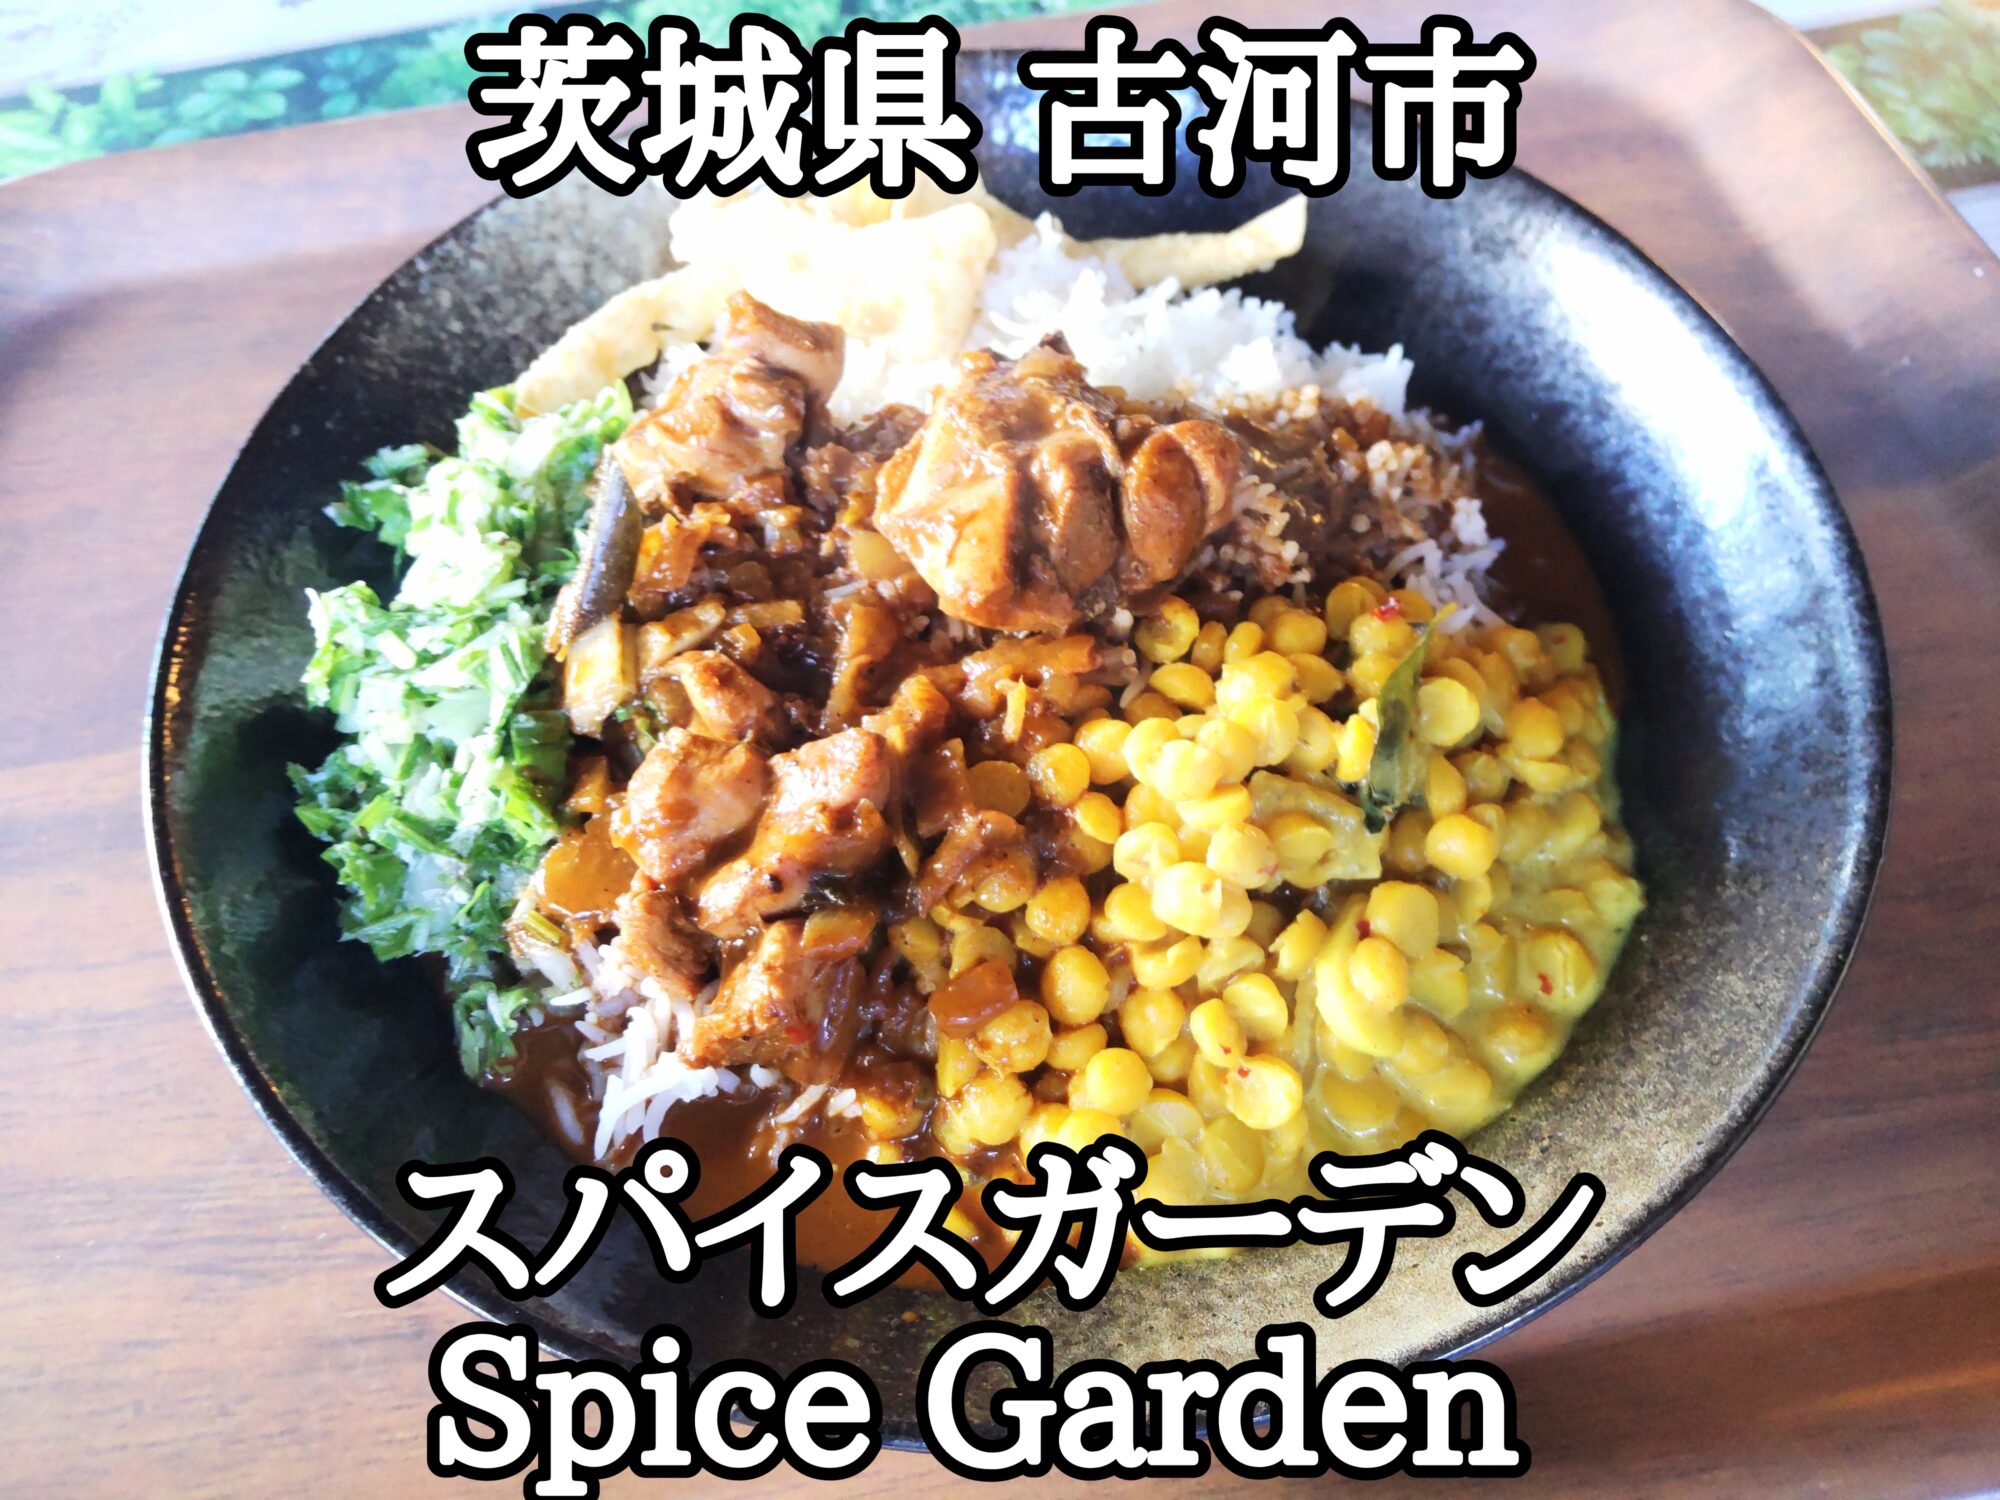 【茨城県】【古河市】「スパイスガーデン Spice Garden」830円とお得なチキンカレーとバスマティライス